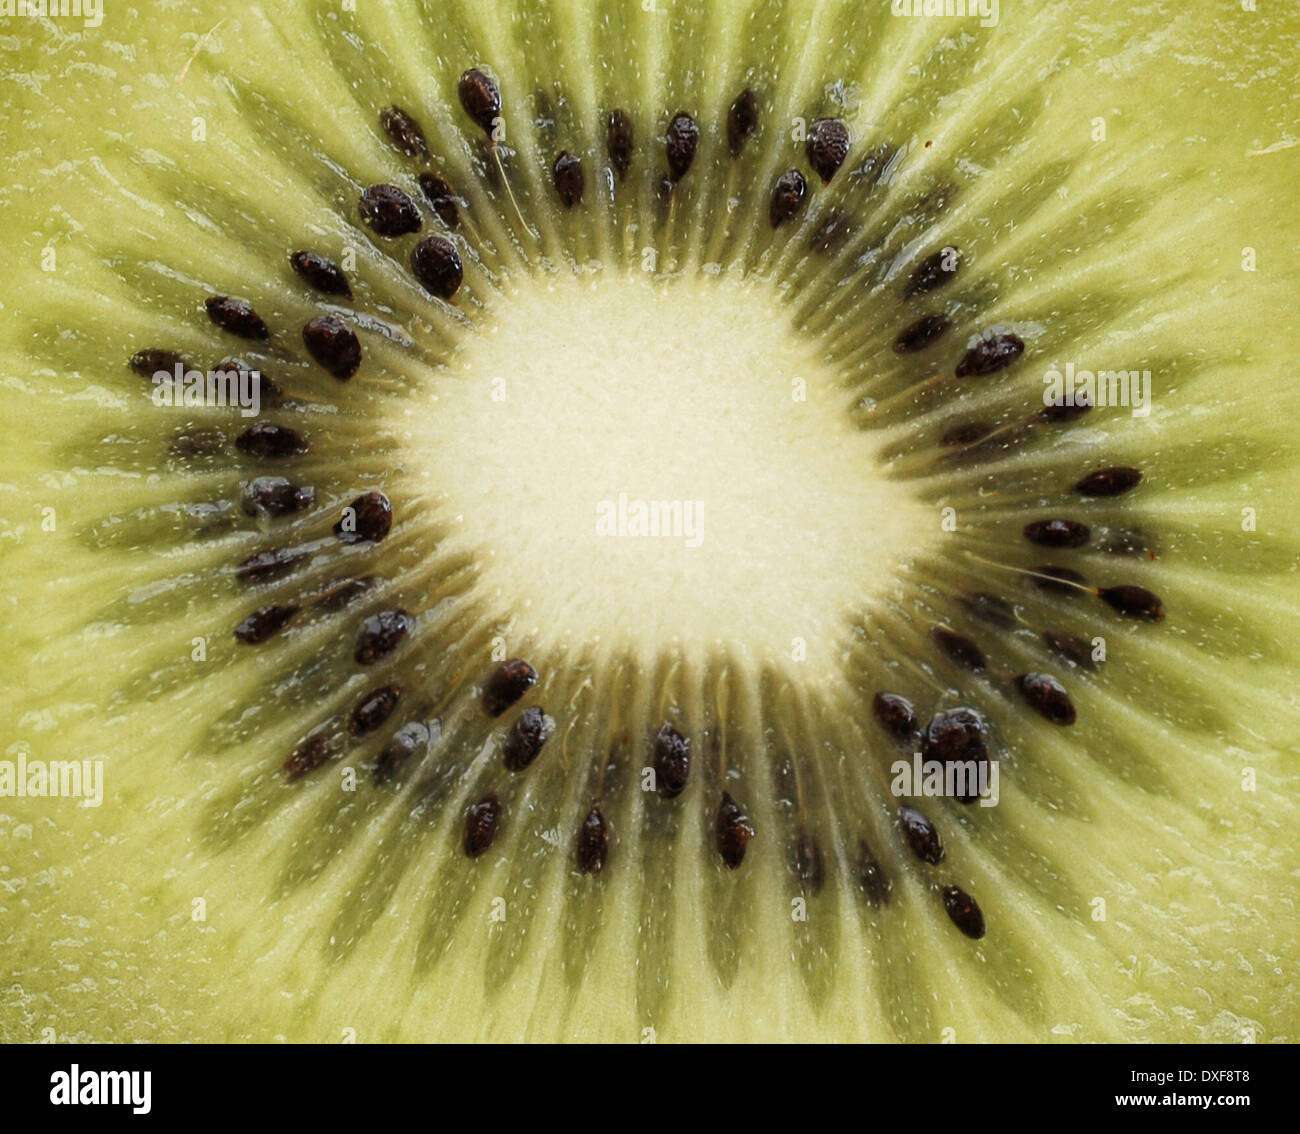 Kiwi fruit close-up, Stock Photo